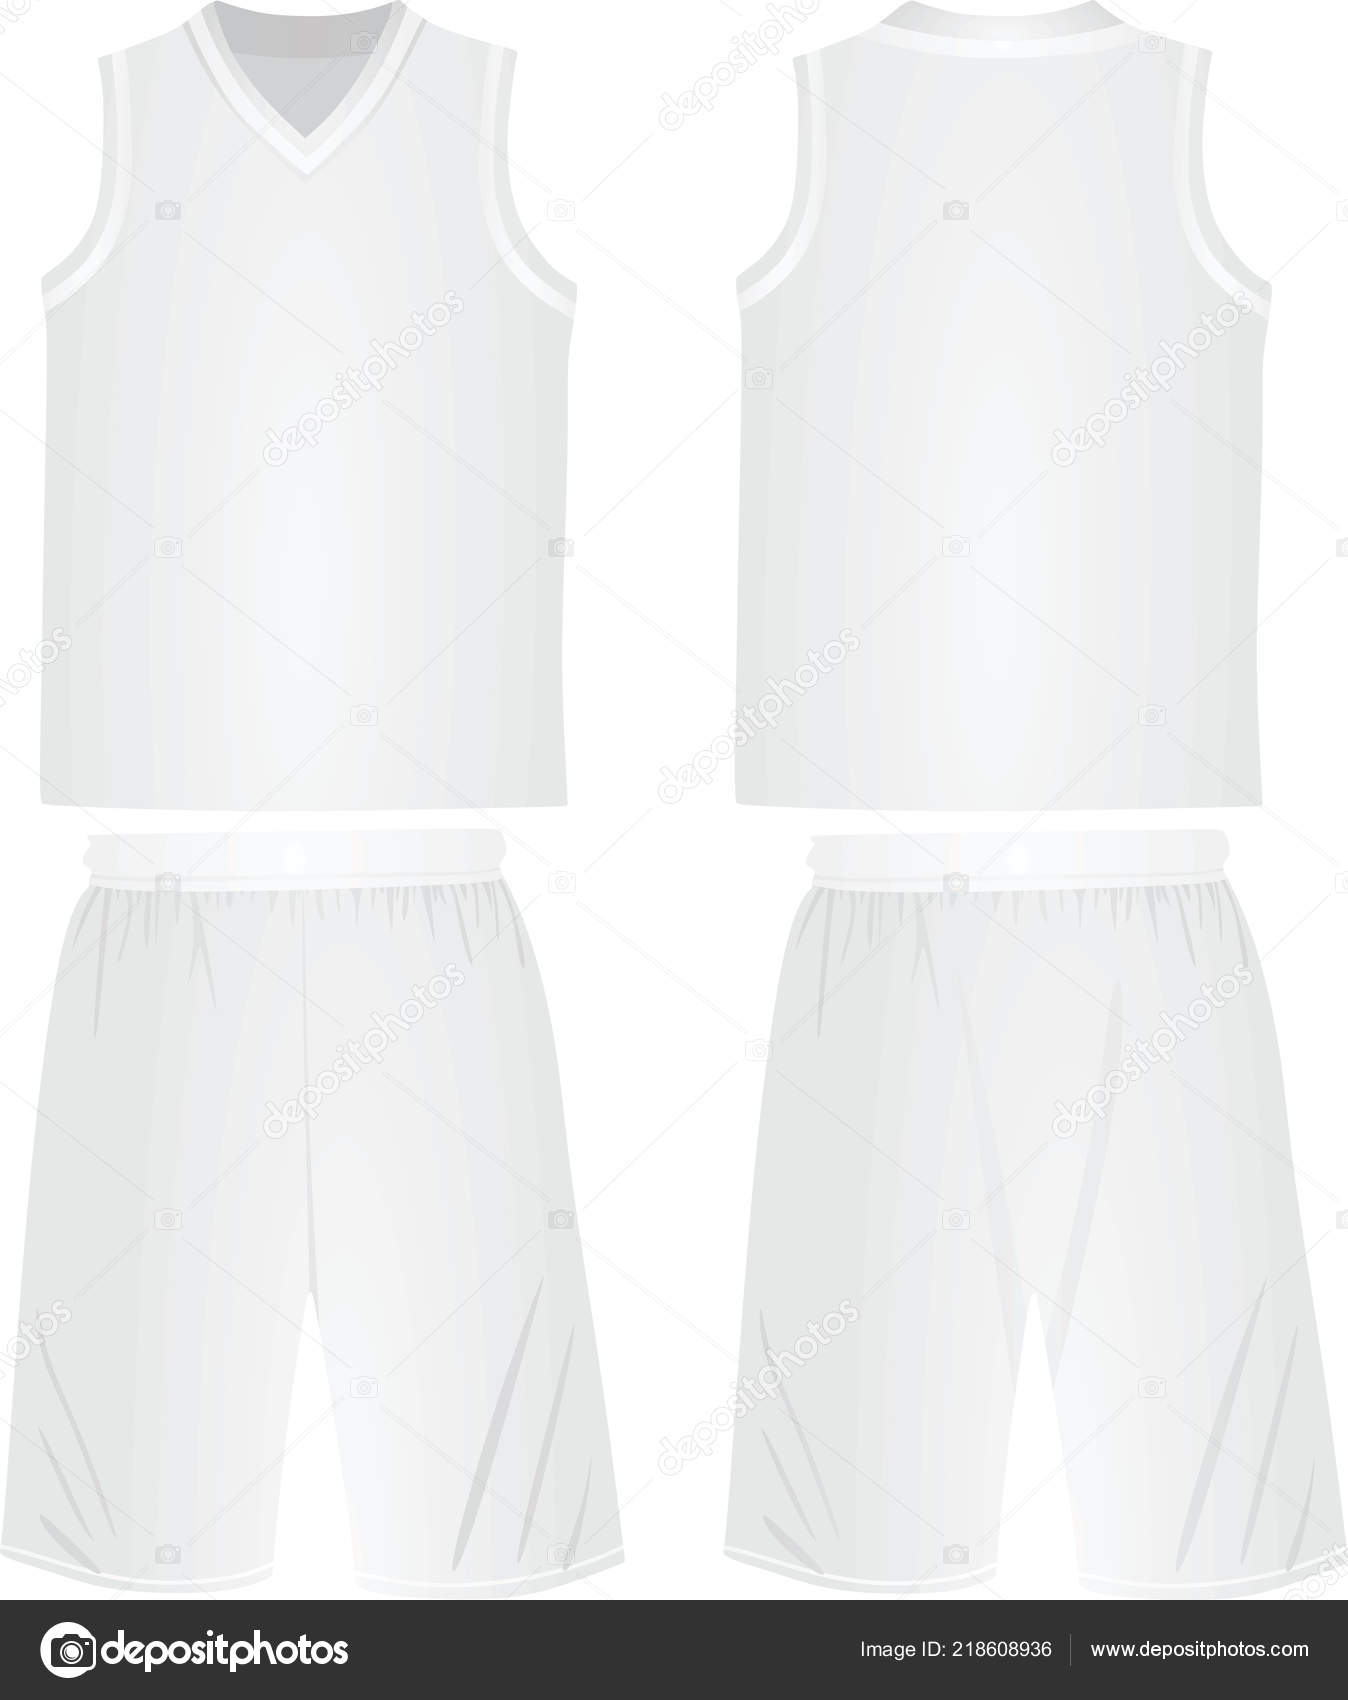 white basketball jersey